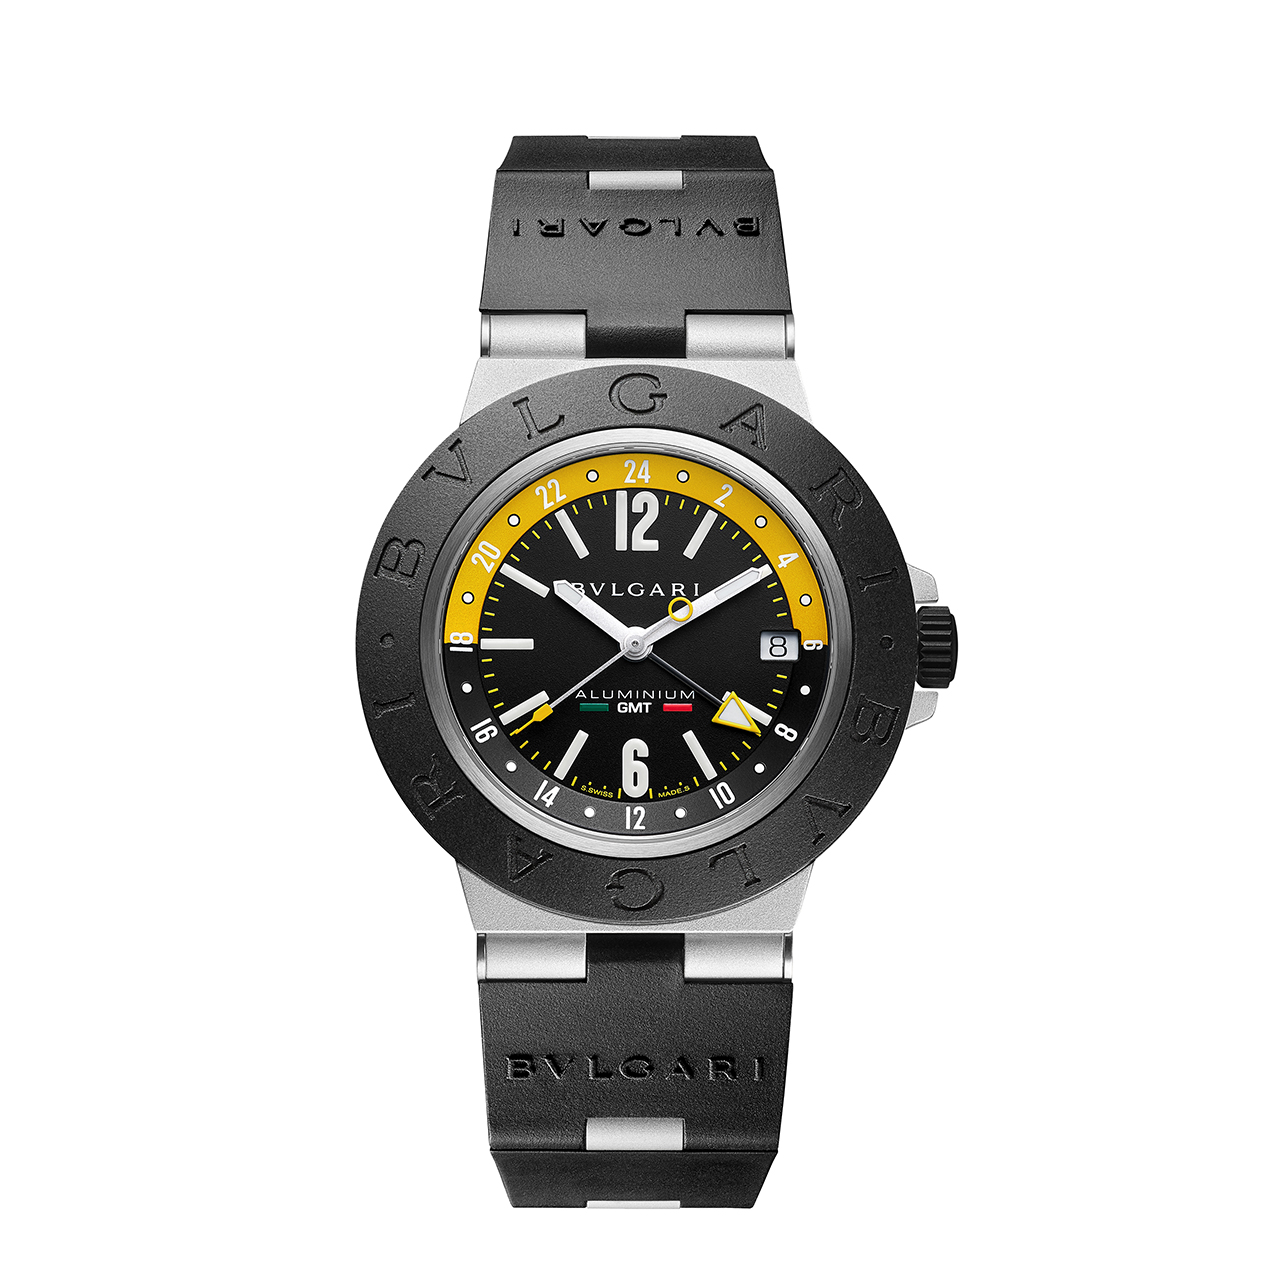 Bulgari Aluminium Amerigo Vespucci Special Edition watch